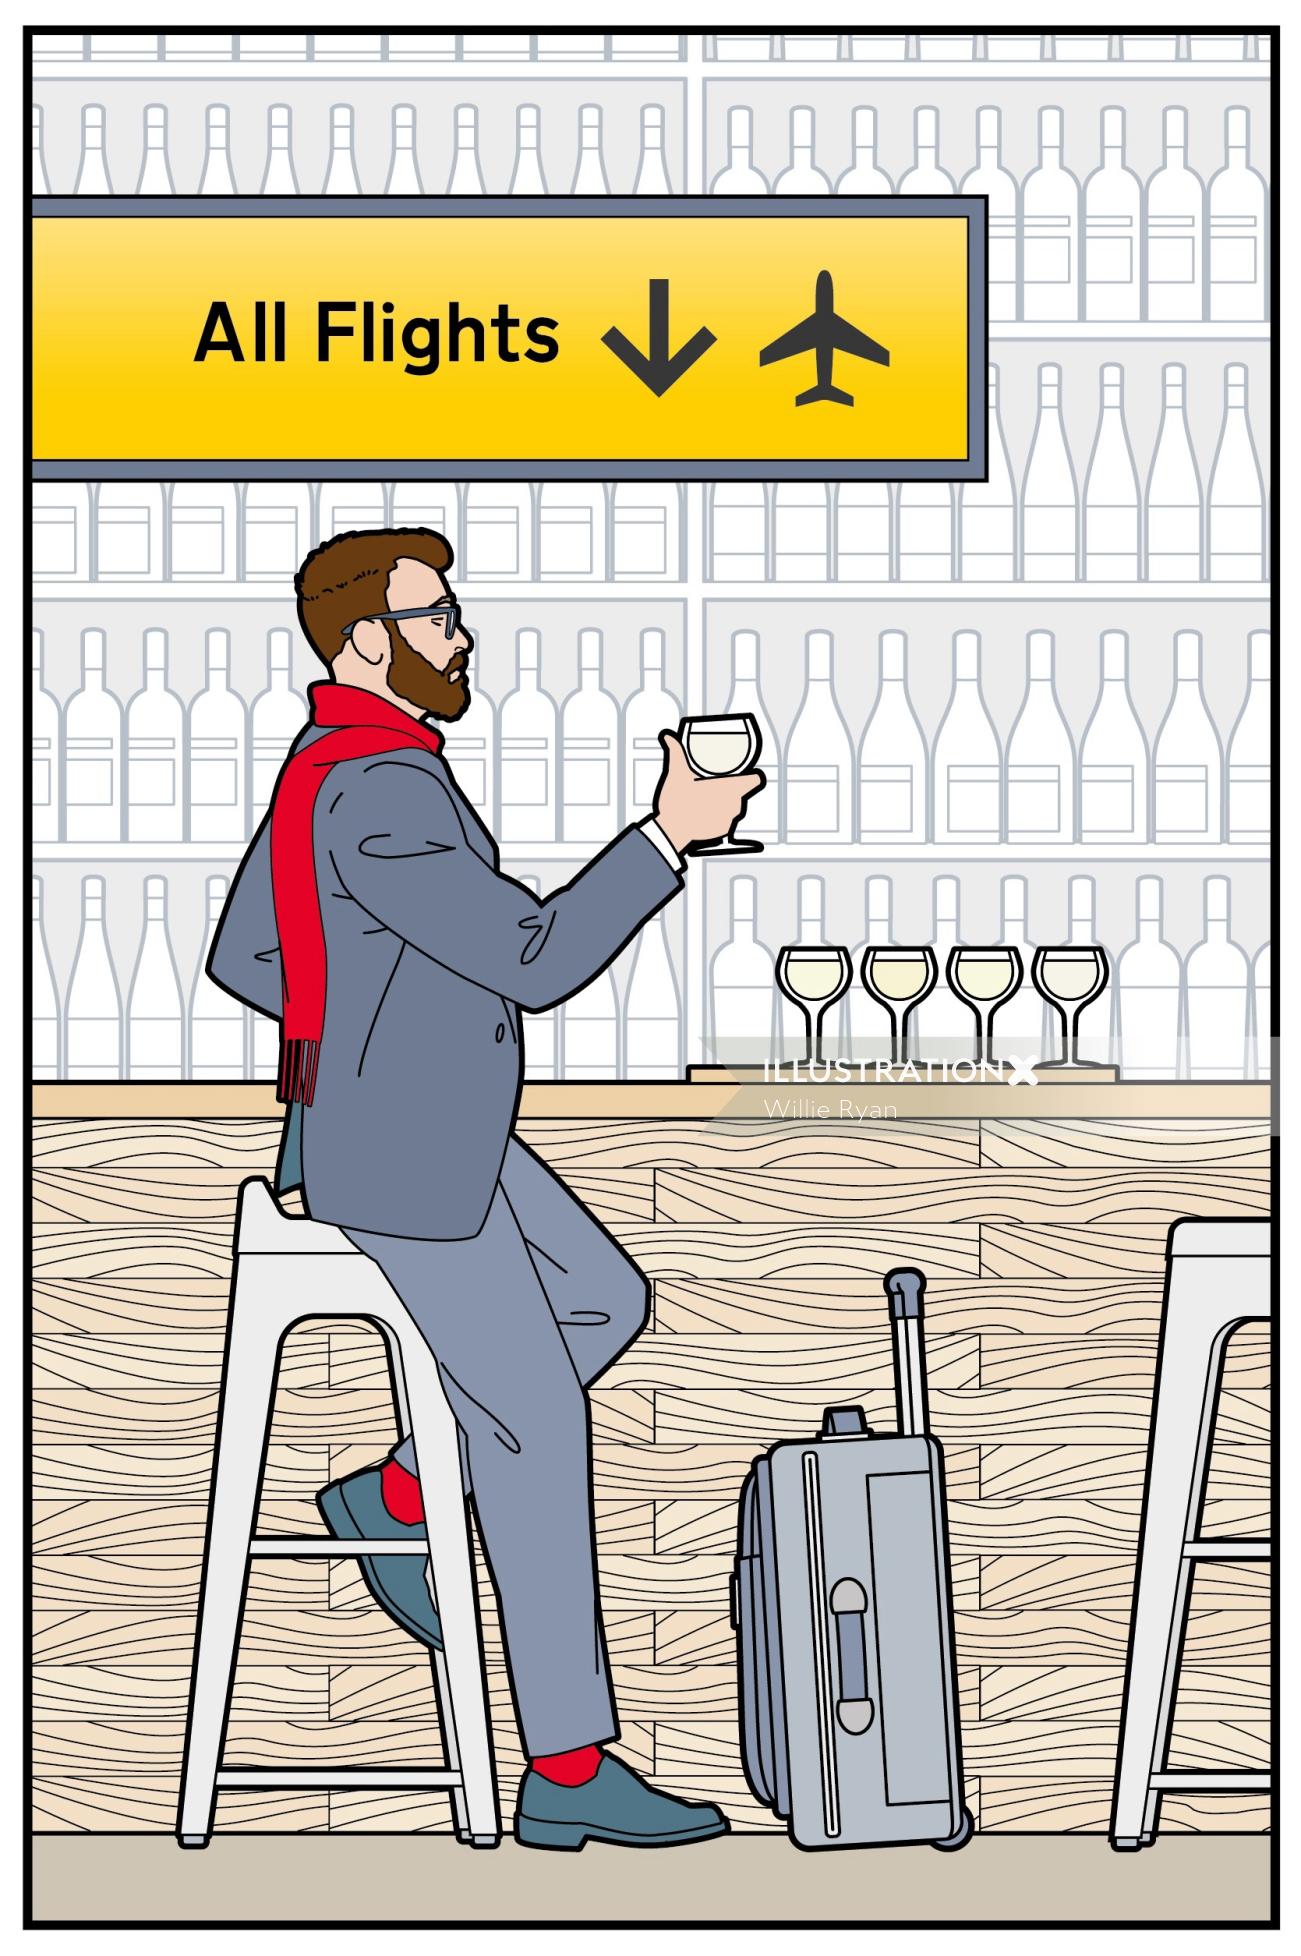 空港、バー、ワイン、テイスティング、出発、ラウンジ、旅行者、旅行